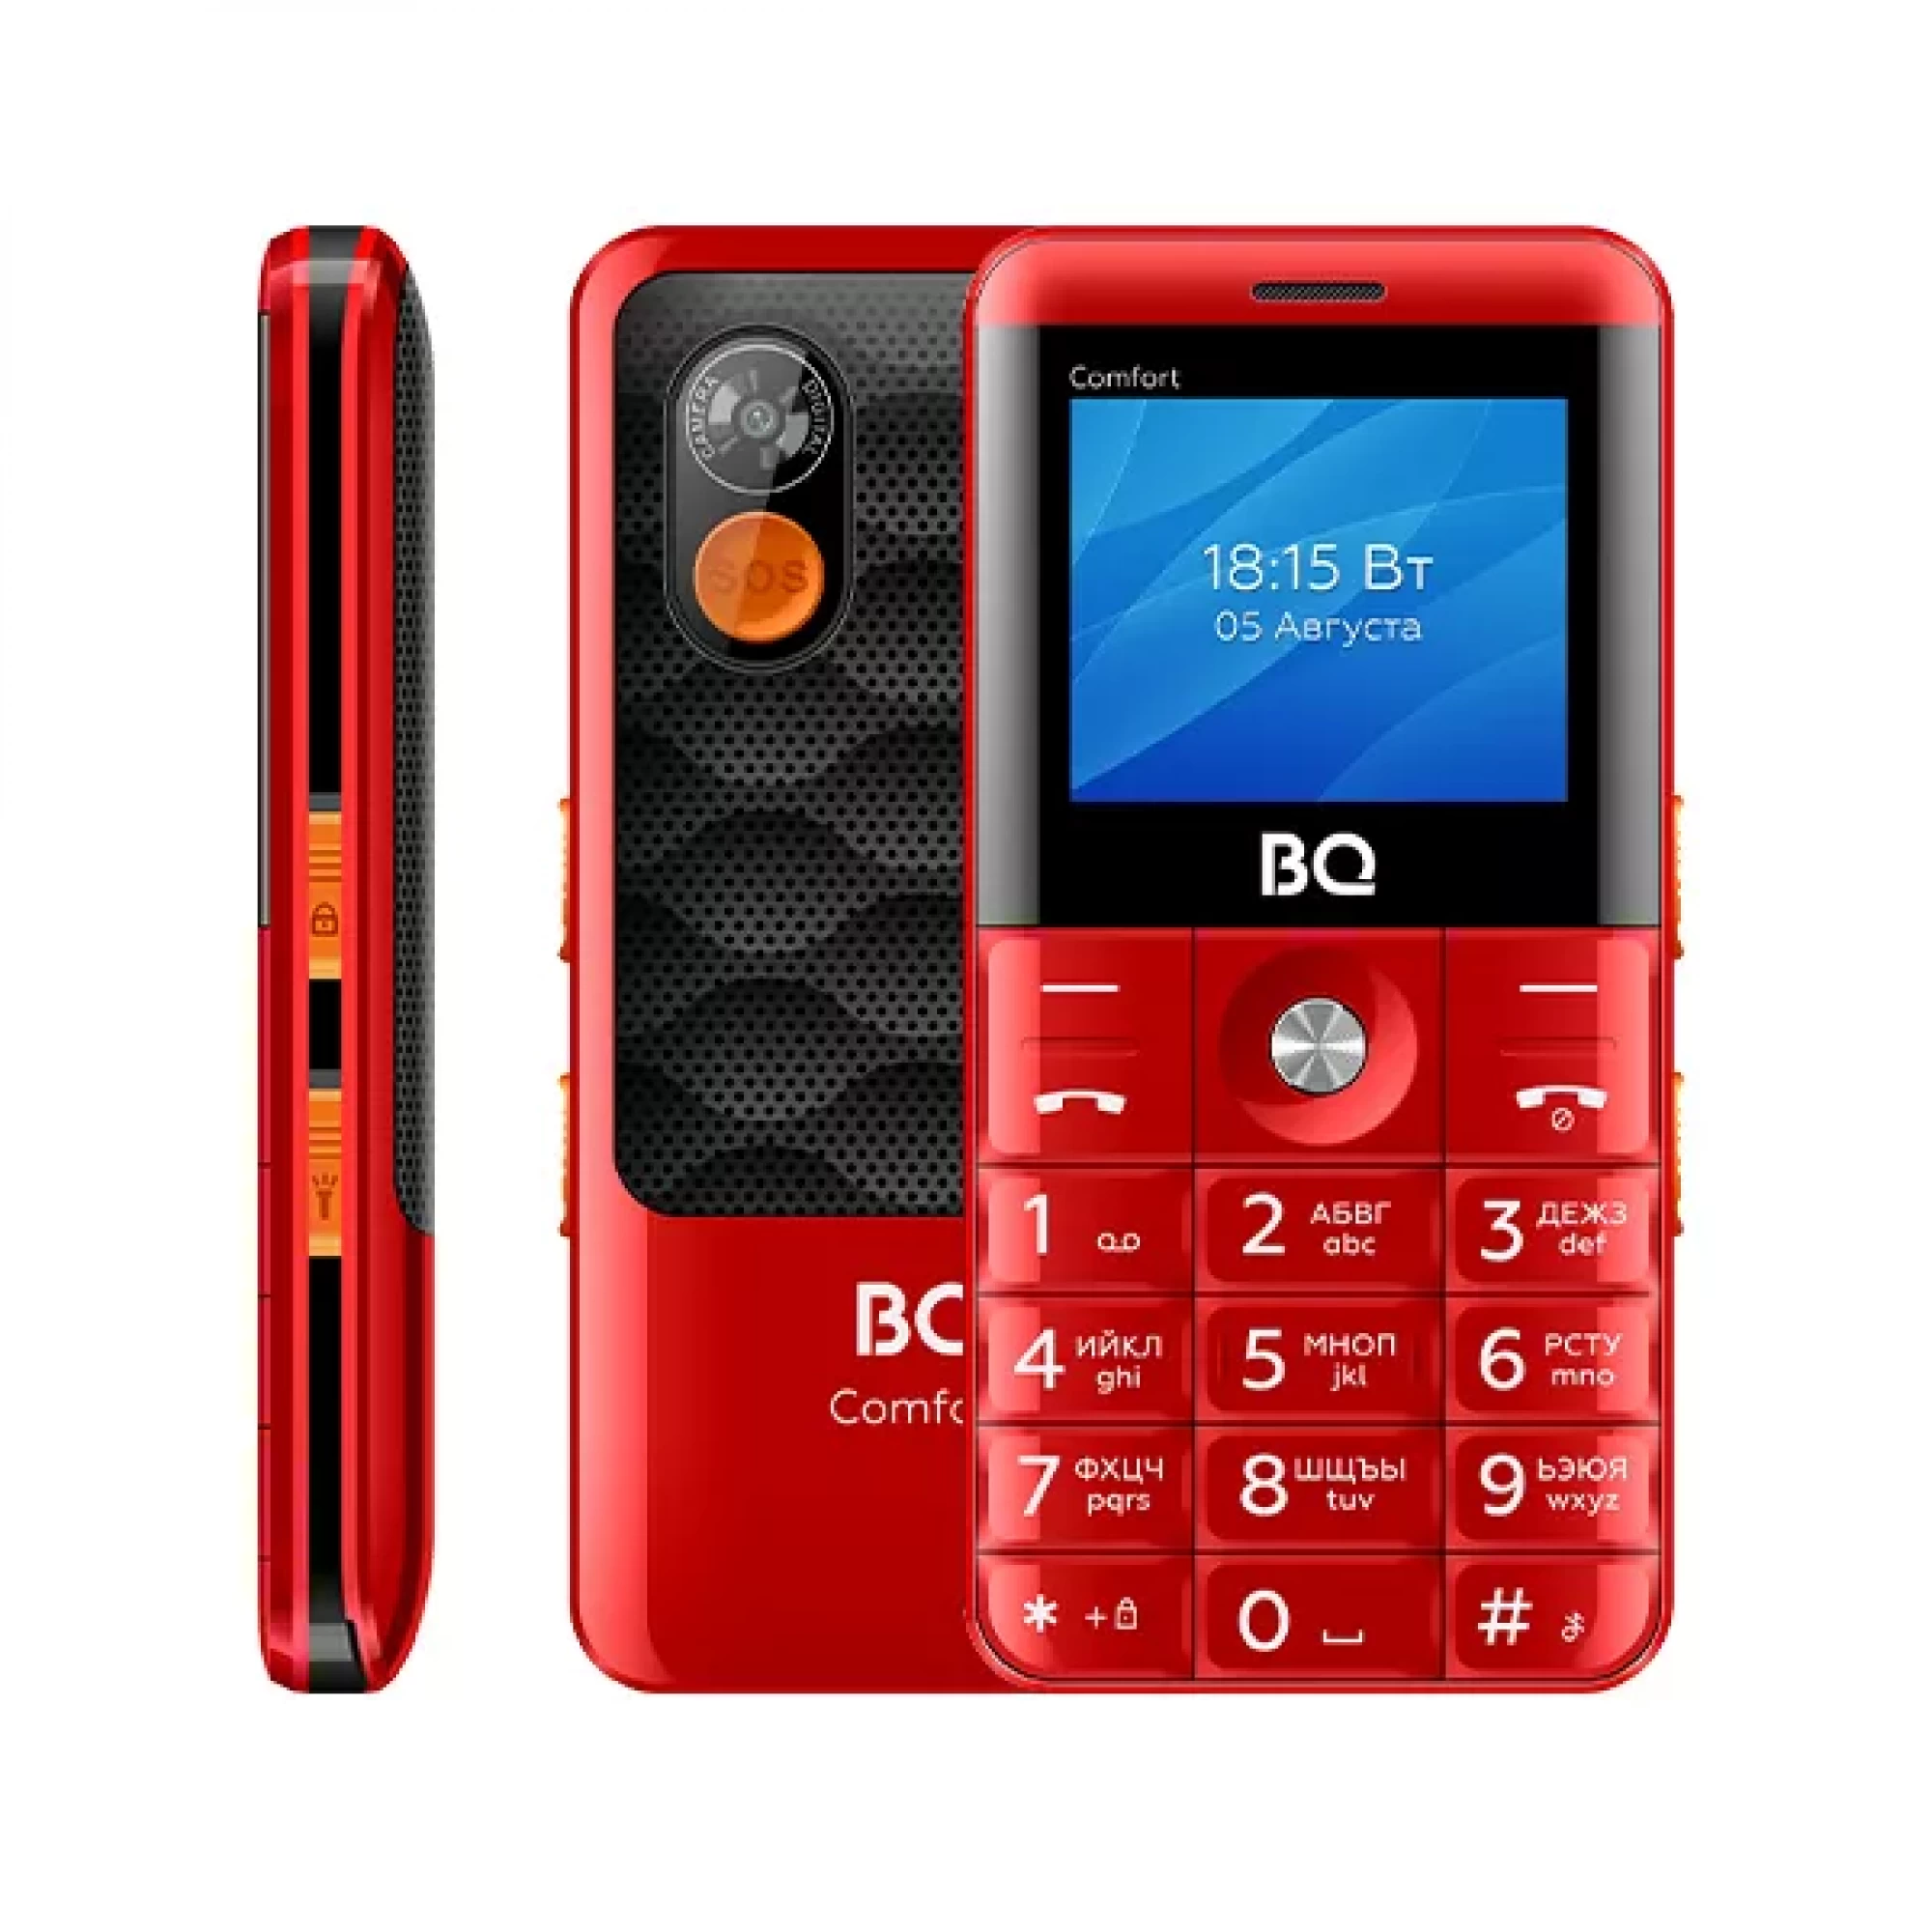 Мобильный телефон BQ BQ-2006 Comfort (красный)